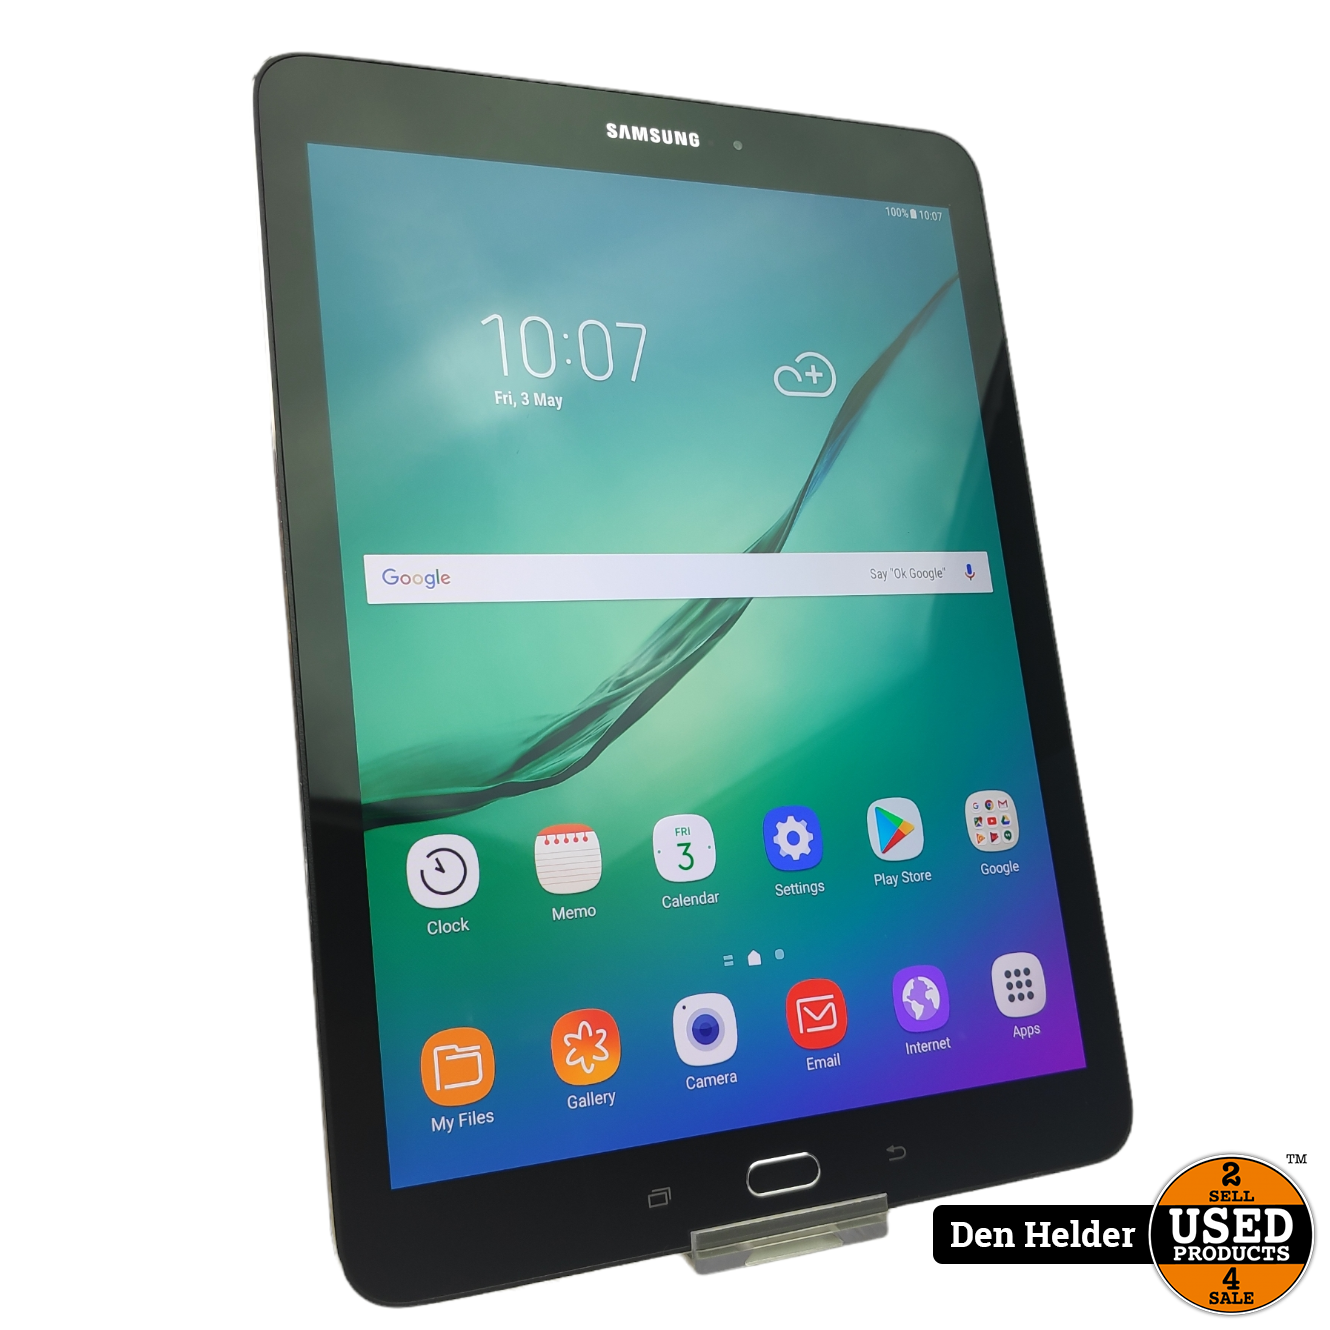 Worden auteursrechten Afwijken Samsung Galaxy Tab S2 32GB Zwart - In Goede Staat! - Used Products Den  Helder